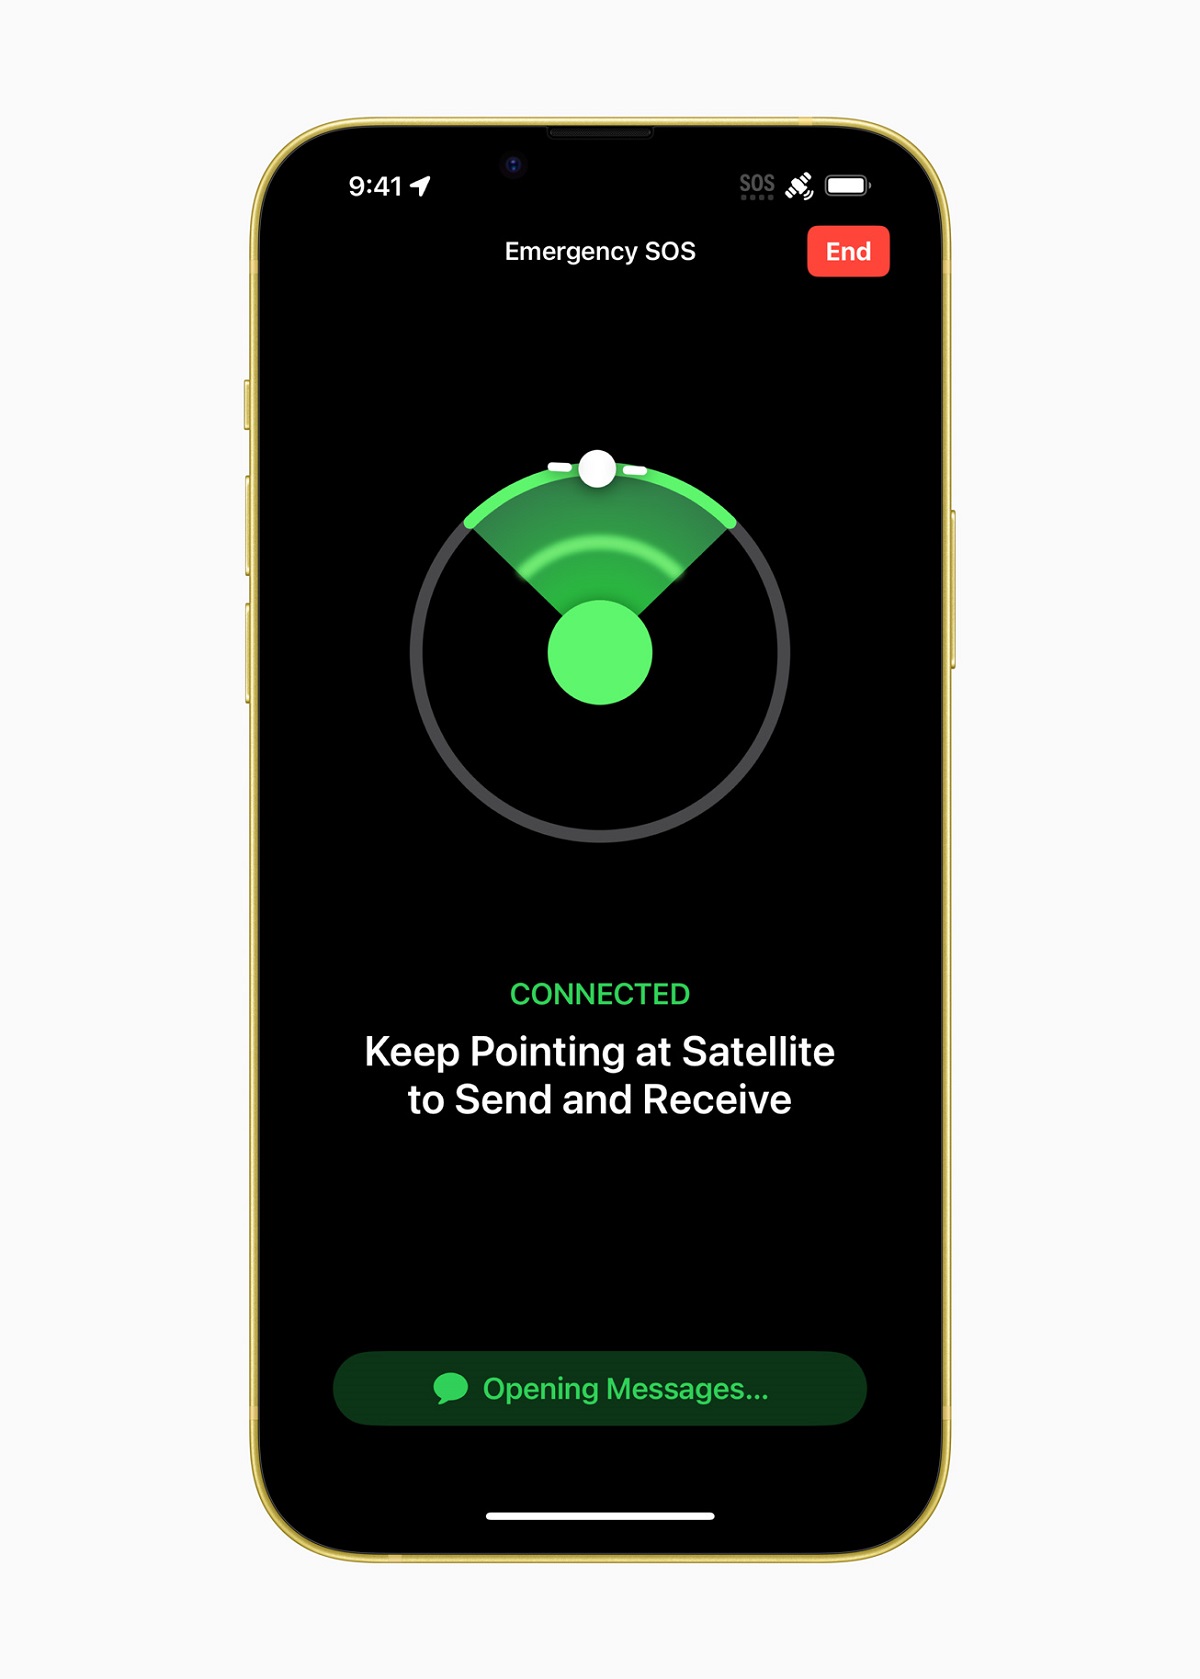 Интуитивно понятный интерфейс подсказывает пользователю, куда направить iPhone для подключения к спутнику.